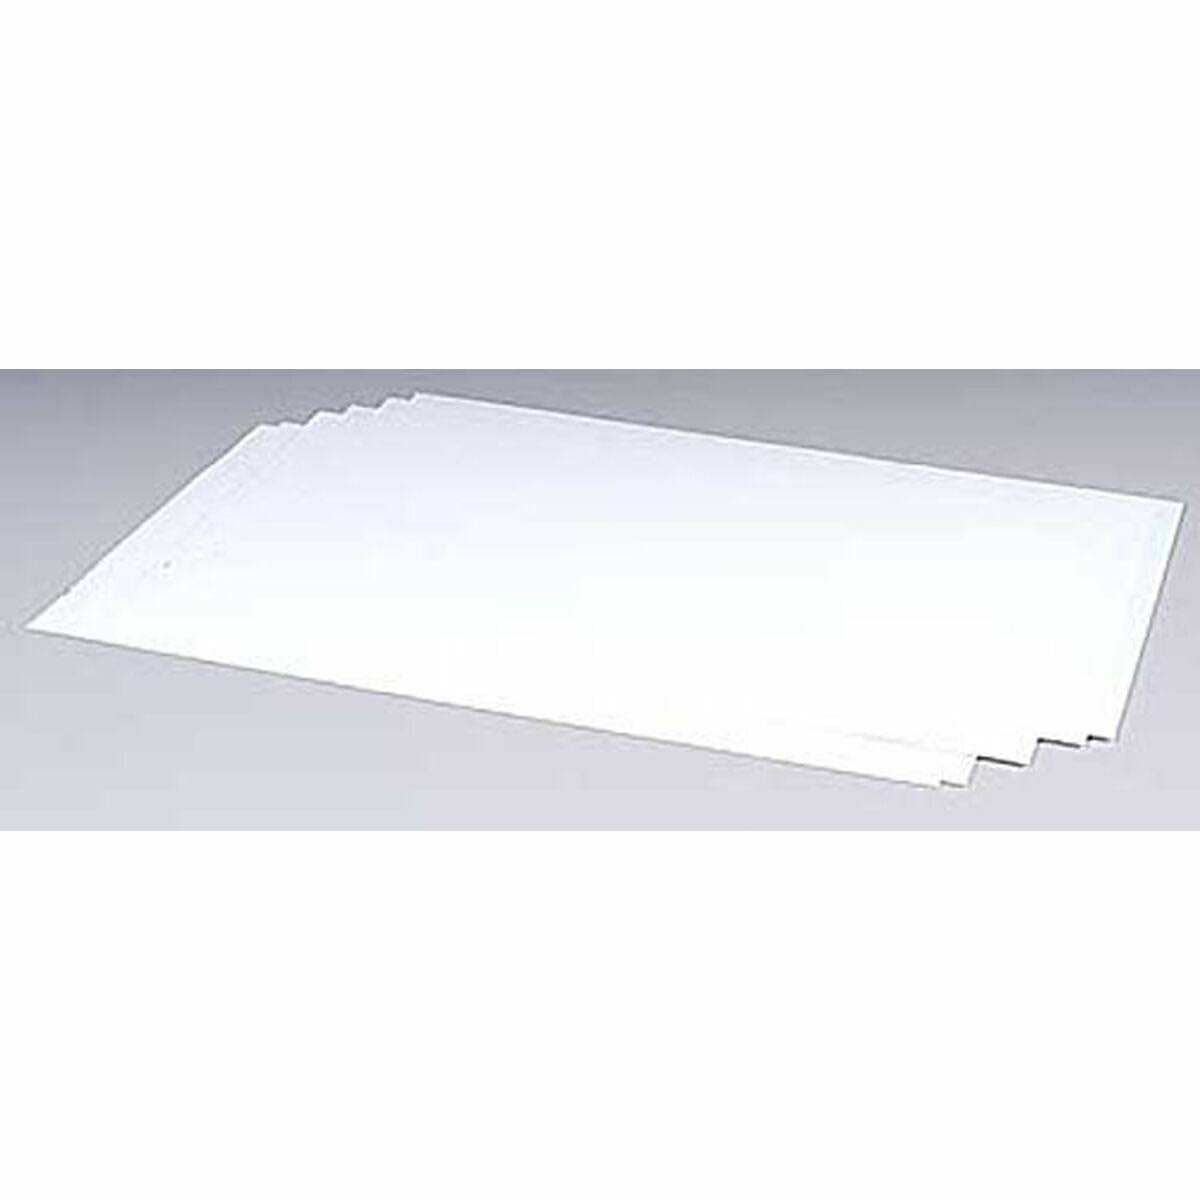 Plastruct White Sheet Styrene .010 (8)